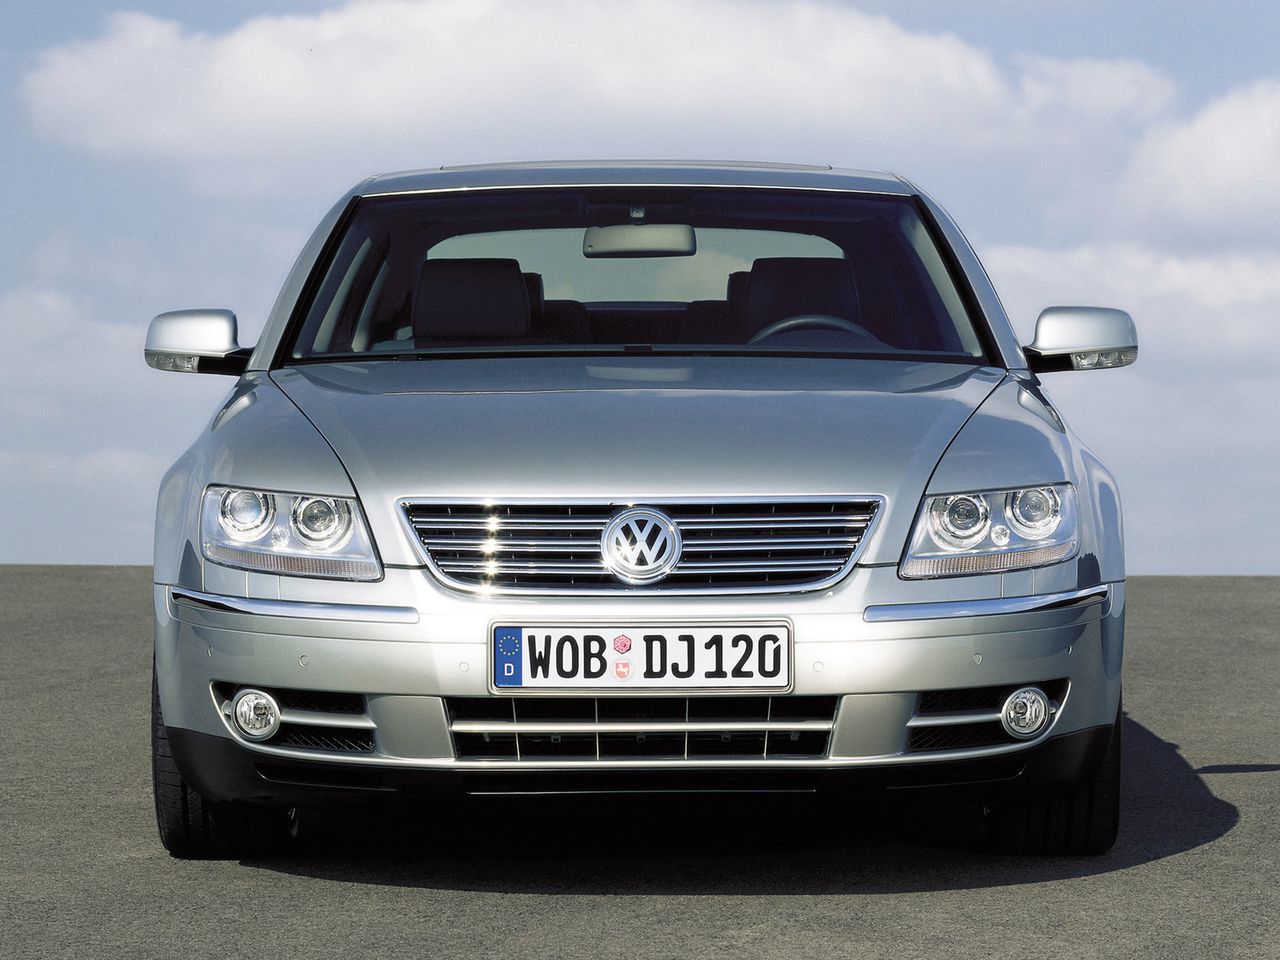 VW Phaeton 6.0 W12 to ryzykowny i drogi w utrzymaniu model